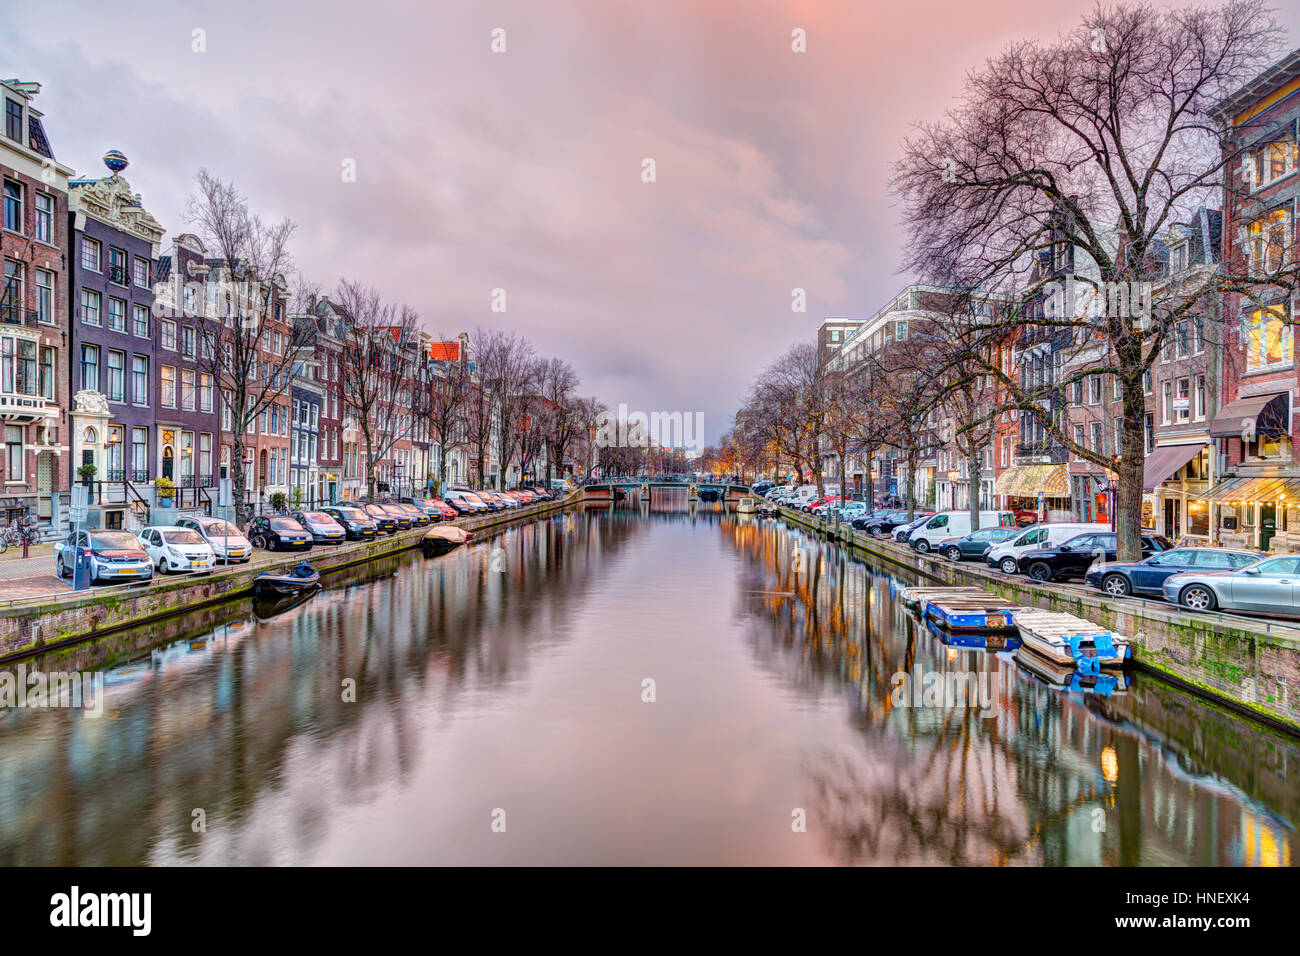 Kanal mit alten Häusern, Abend-Stimmung, Amsterdam, Niederlande Stockfoto